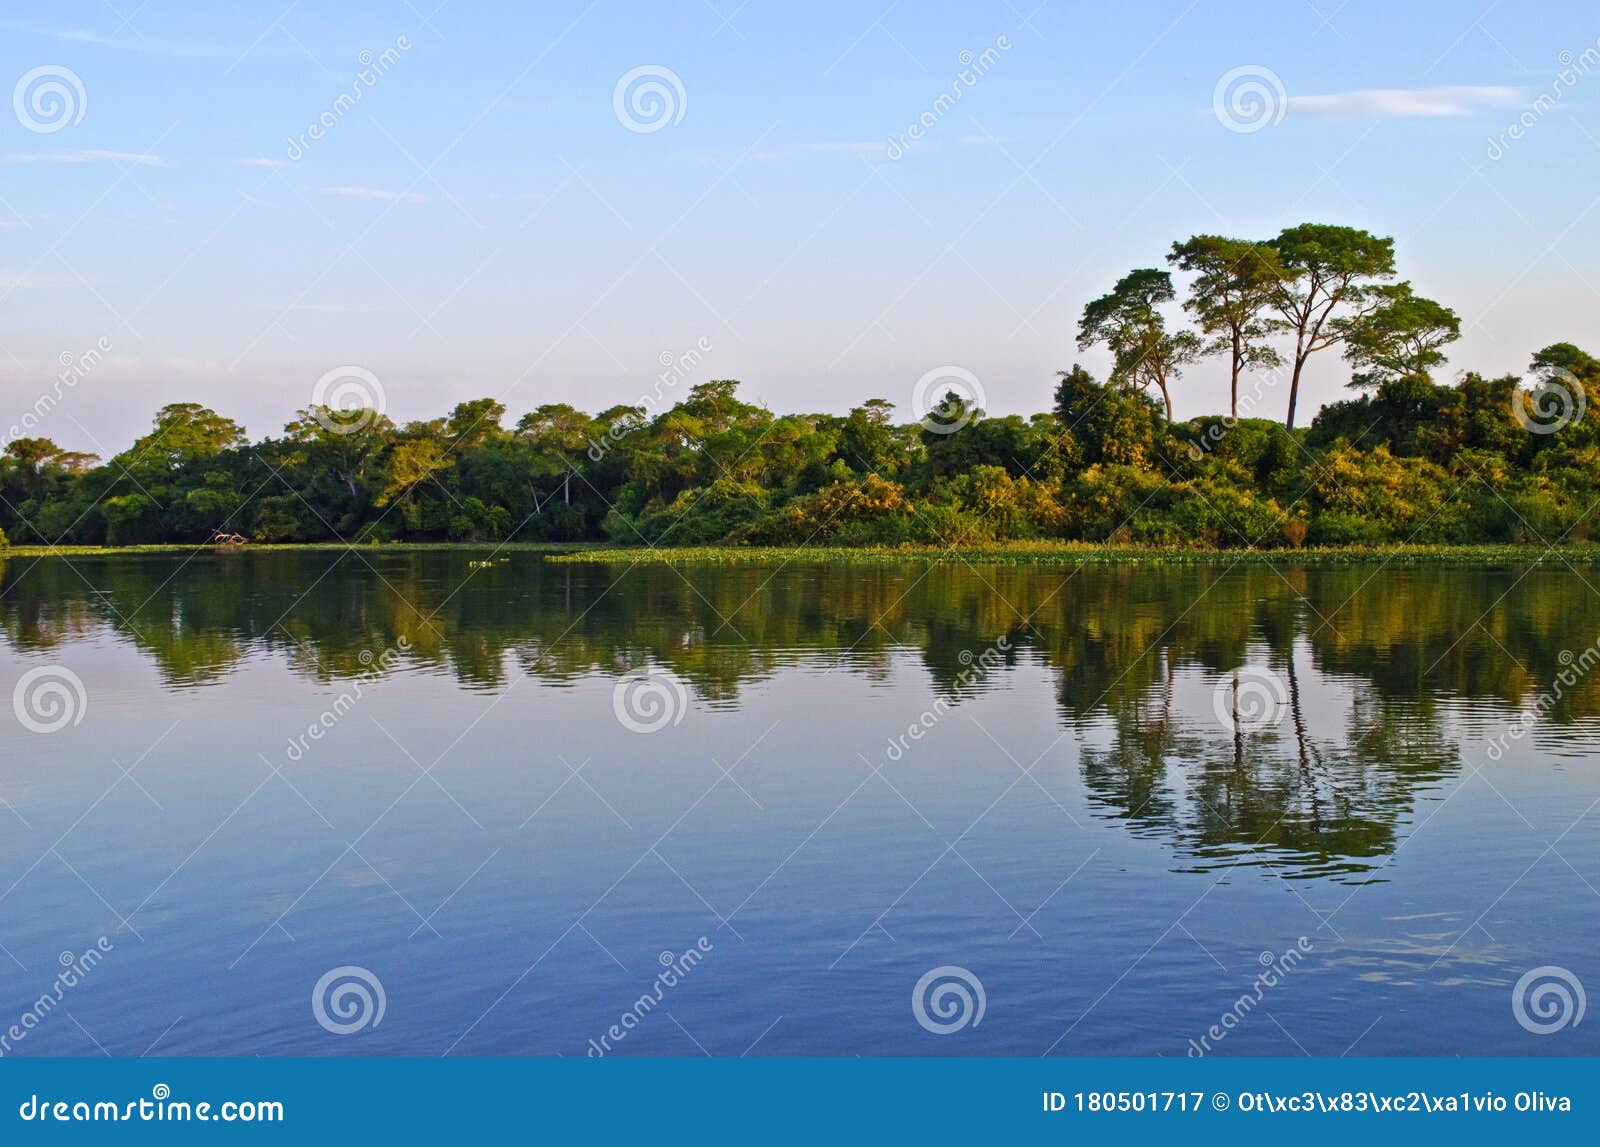 landscape in rio piquiri, pantanal, brazil